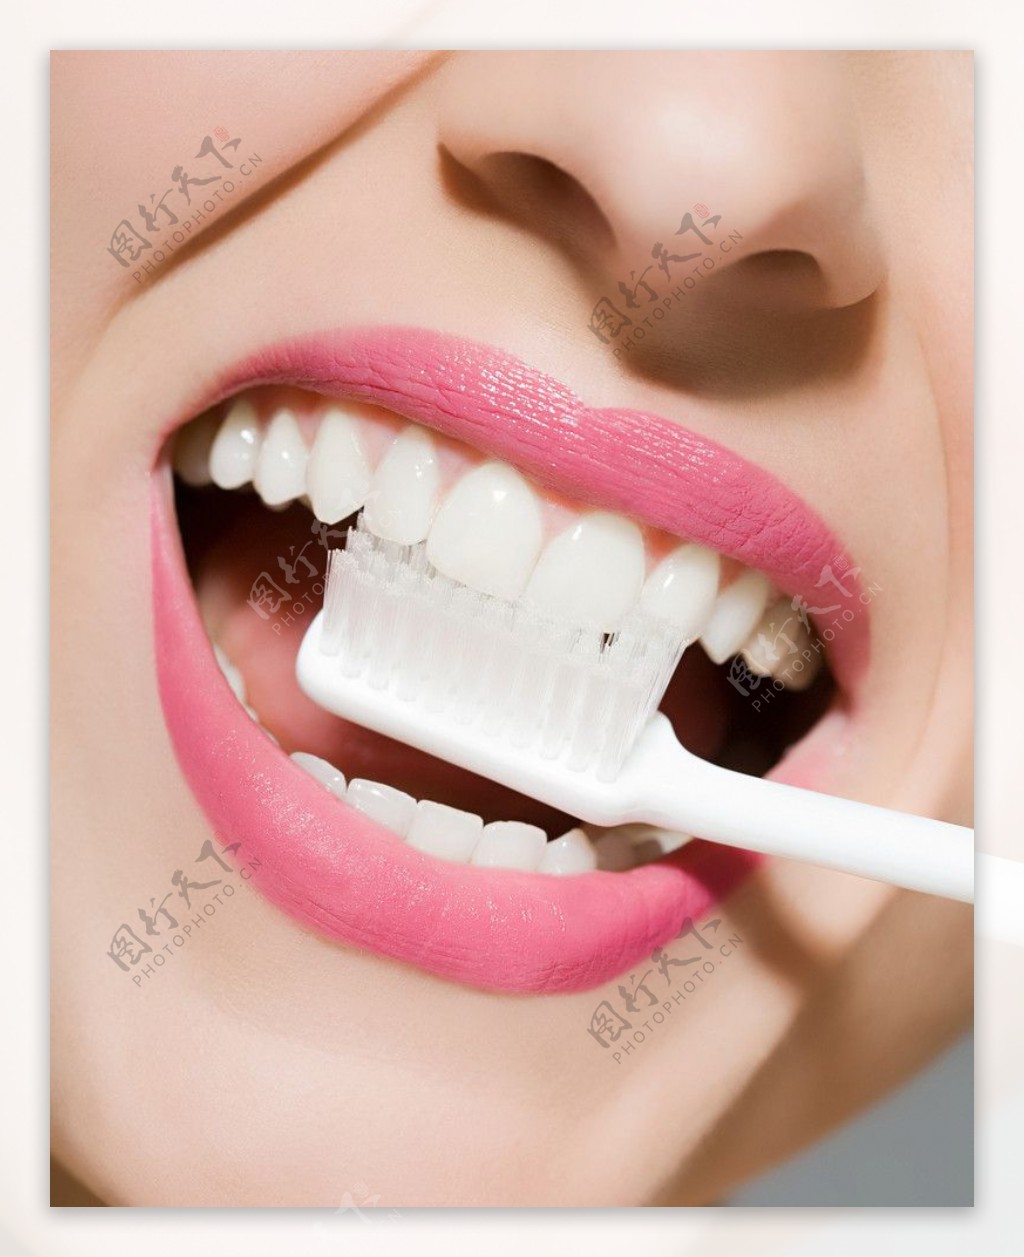 人体局部特写嘴巴牙齿牙膏广告素材高清图片